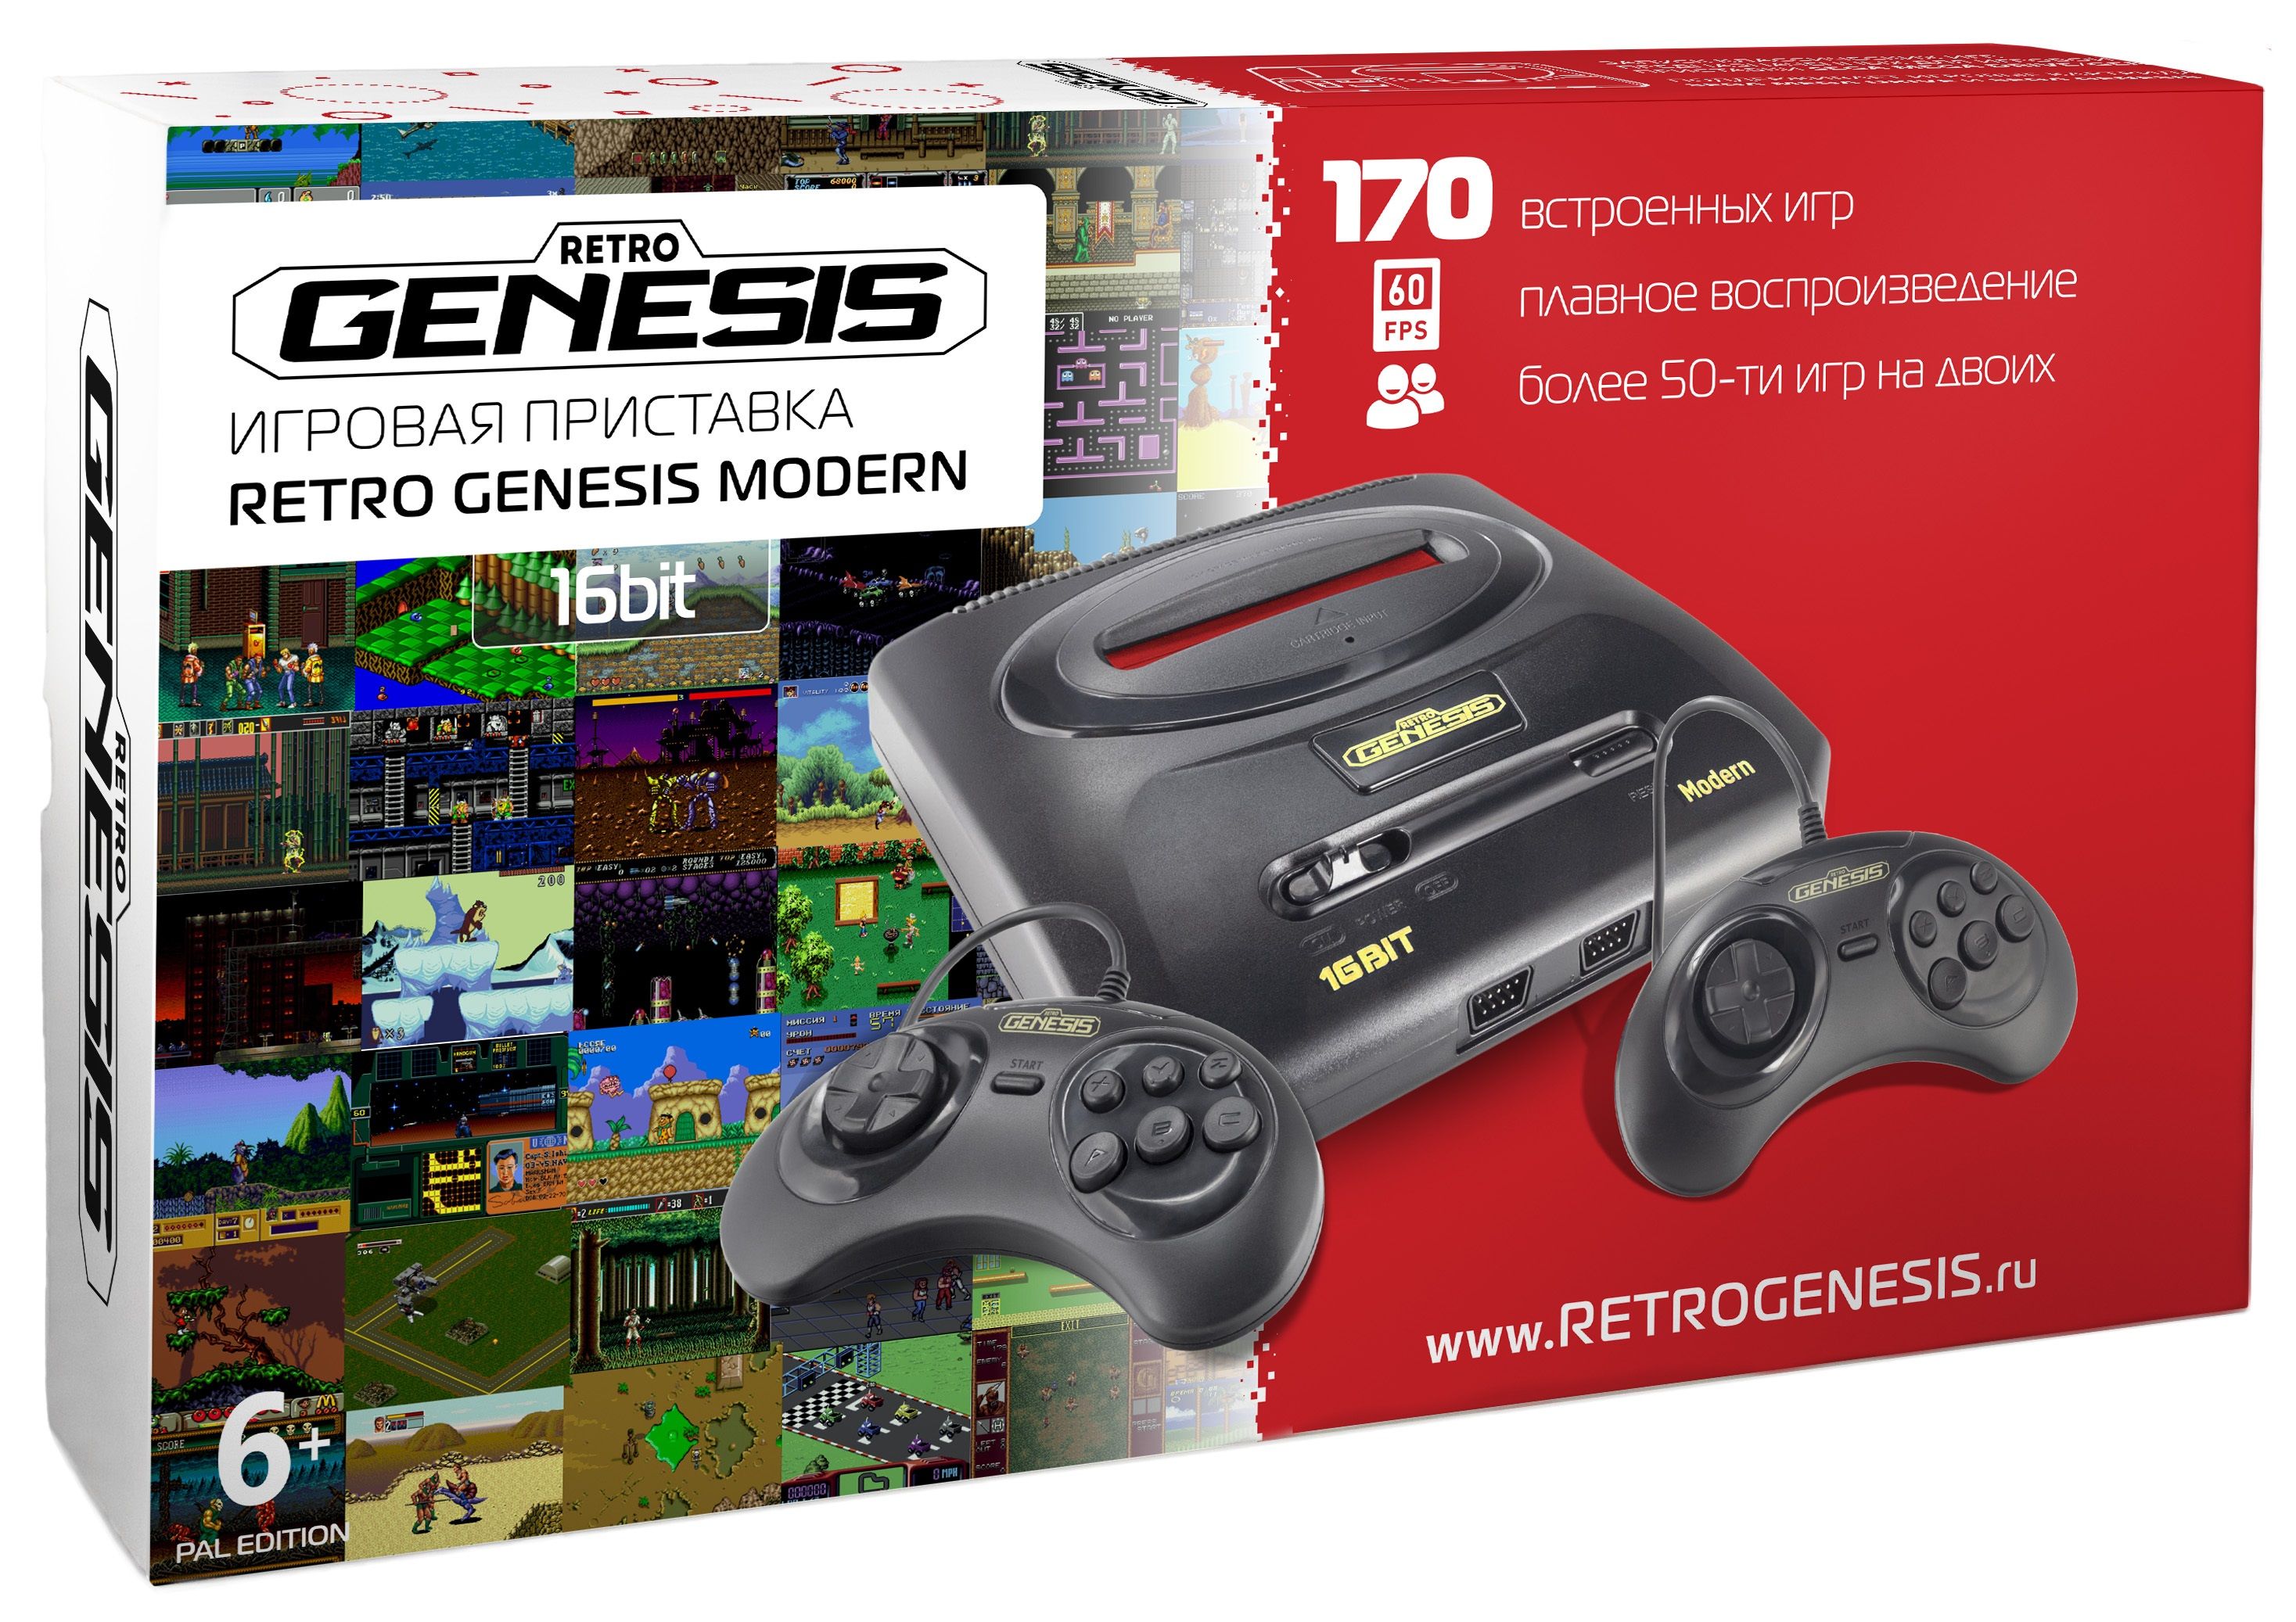 Приставка с встроенными играми. Игровая приставка Retro Genesis Modern + 170 игр. Игровая приставка Sega Retro Genesis Modern conskdn56 черный +170 игр. Приставка Genesis 16 bit 170 игр. Ретро Генезис игровая приставка 16 бит.